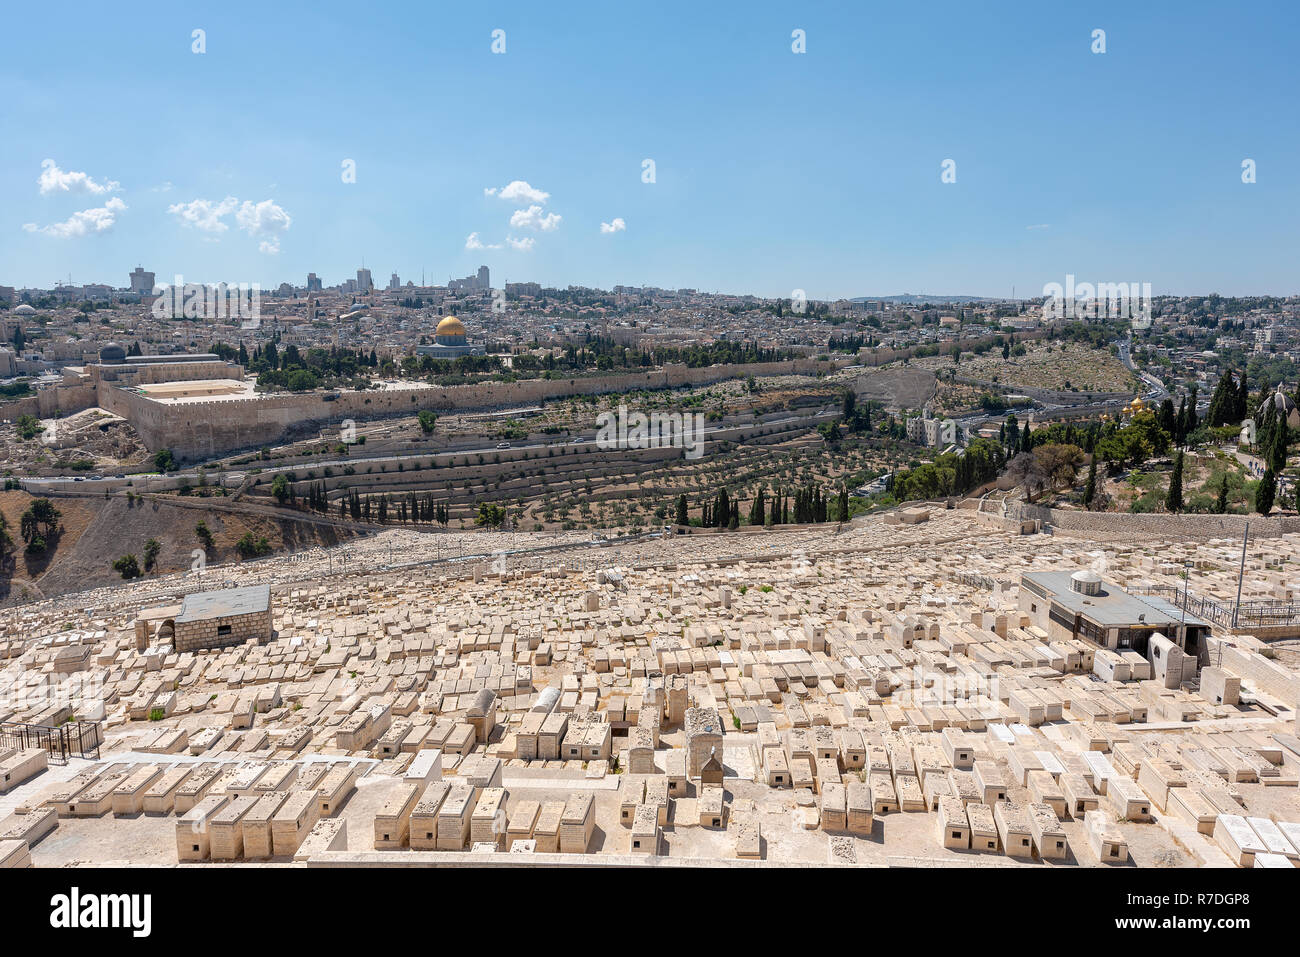 Gerusalemme, Israele - 13 settembre 2020 - le migliaia di tombe ebraiche sul monte delle olive, Gerusalemme, Israele. Foto Stock